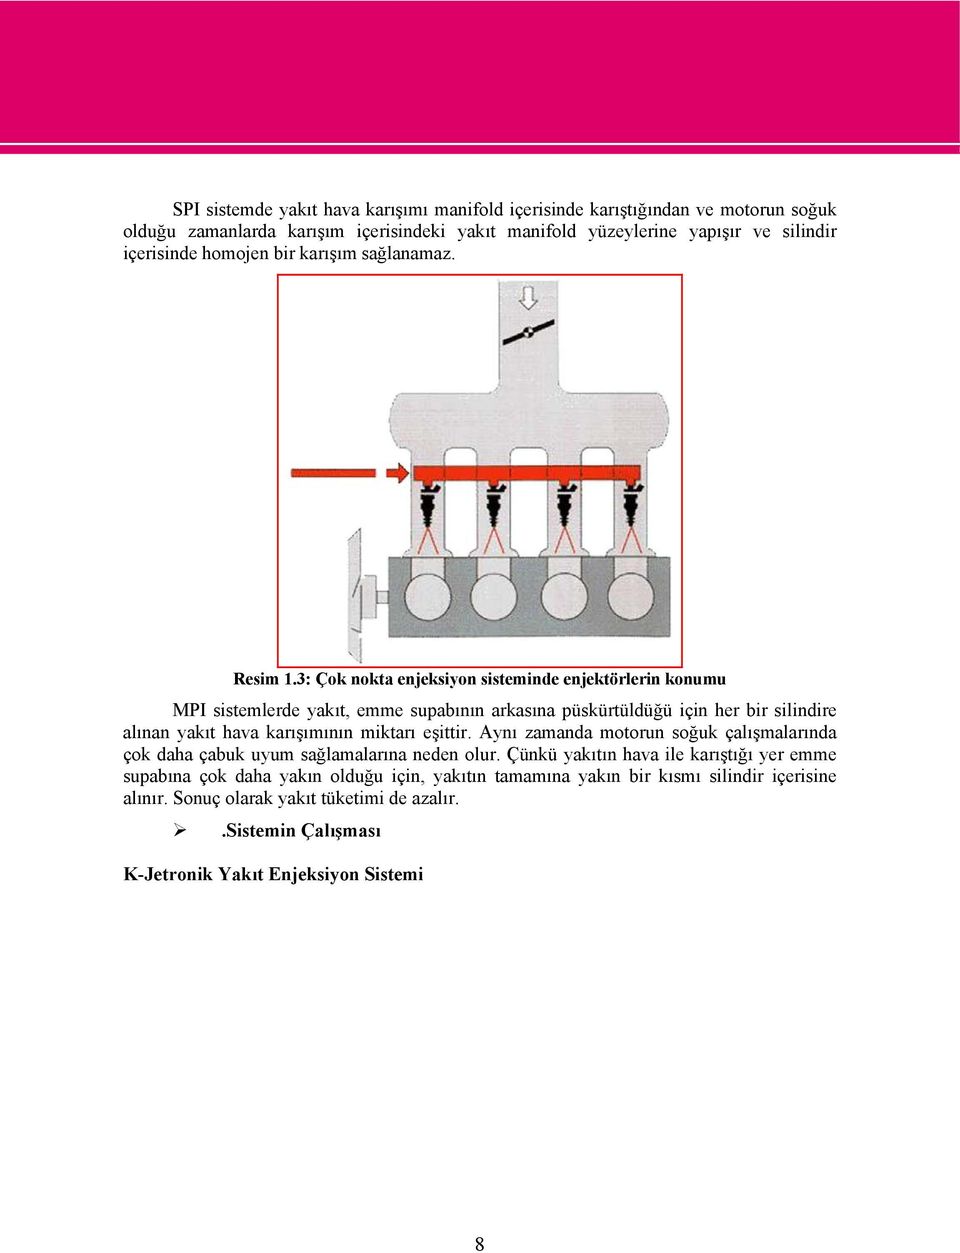 3: Çok nokta enjeksiyon sisteminde enjektörlerin konumu MPI sistemlerde yakıt, emme supabının arkasına püskürtüldüğü için her bir silindire alınan yakıt hava karışımının miktarı